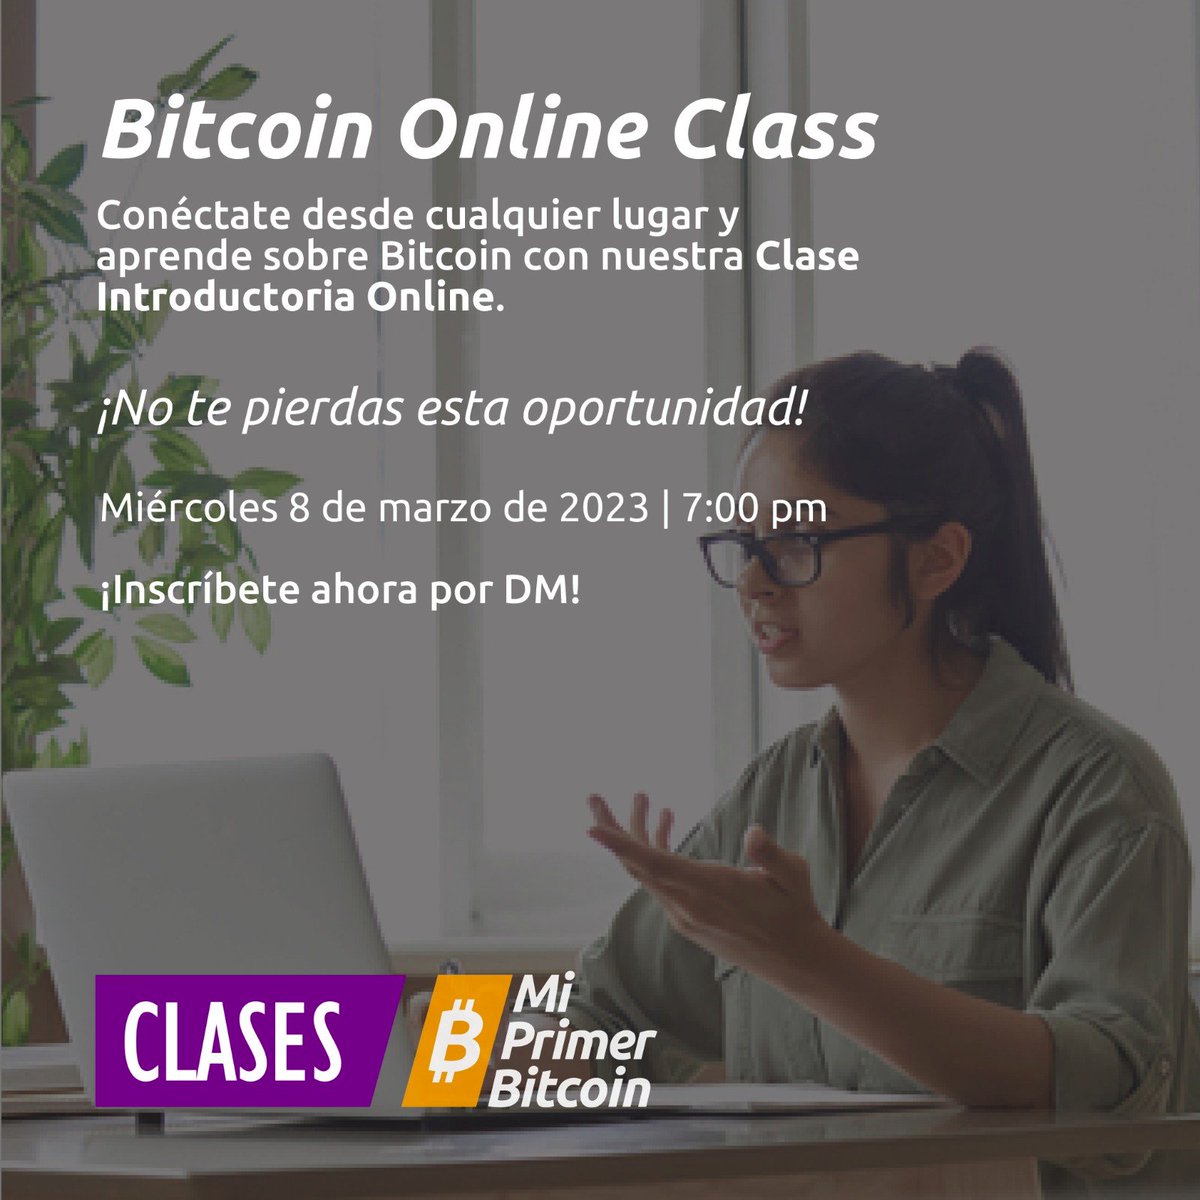 EL SALVADOR 🇸🇻

#MiPrimerBitcoin convoca a sus clases de #Bitcoin en modalidad online y presencial.

Más info ▶️   @MyfirstBitcoin_